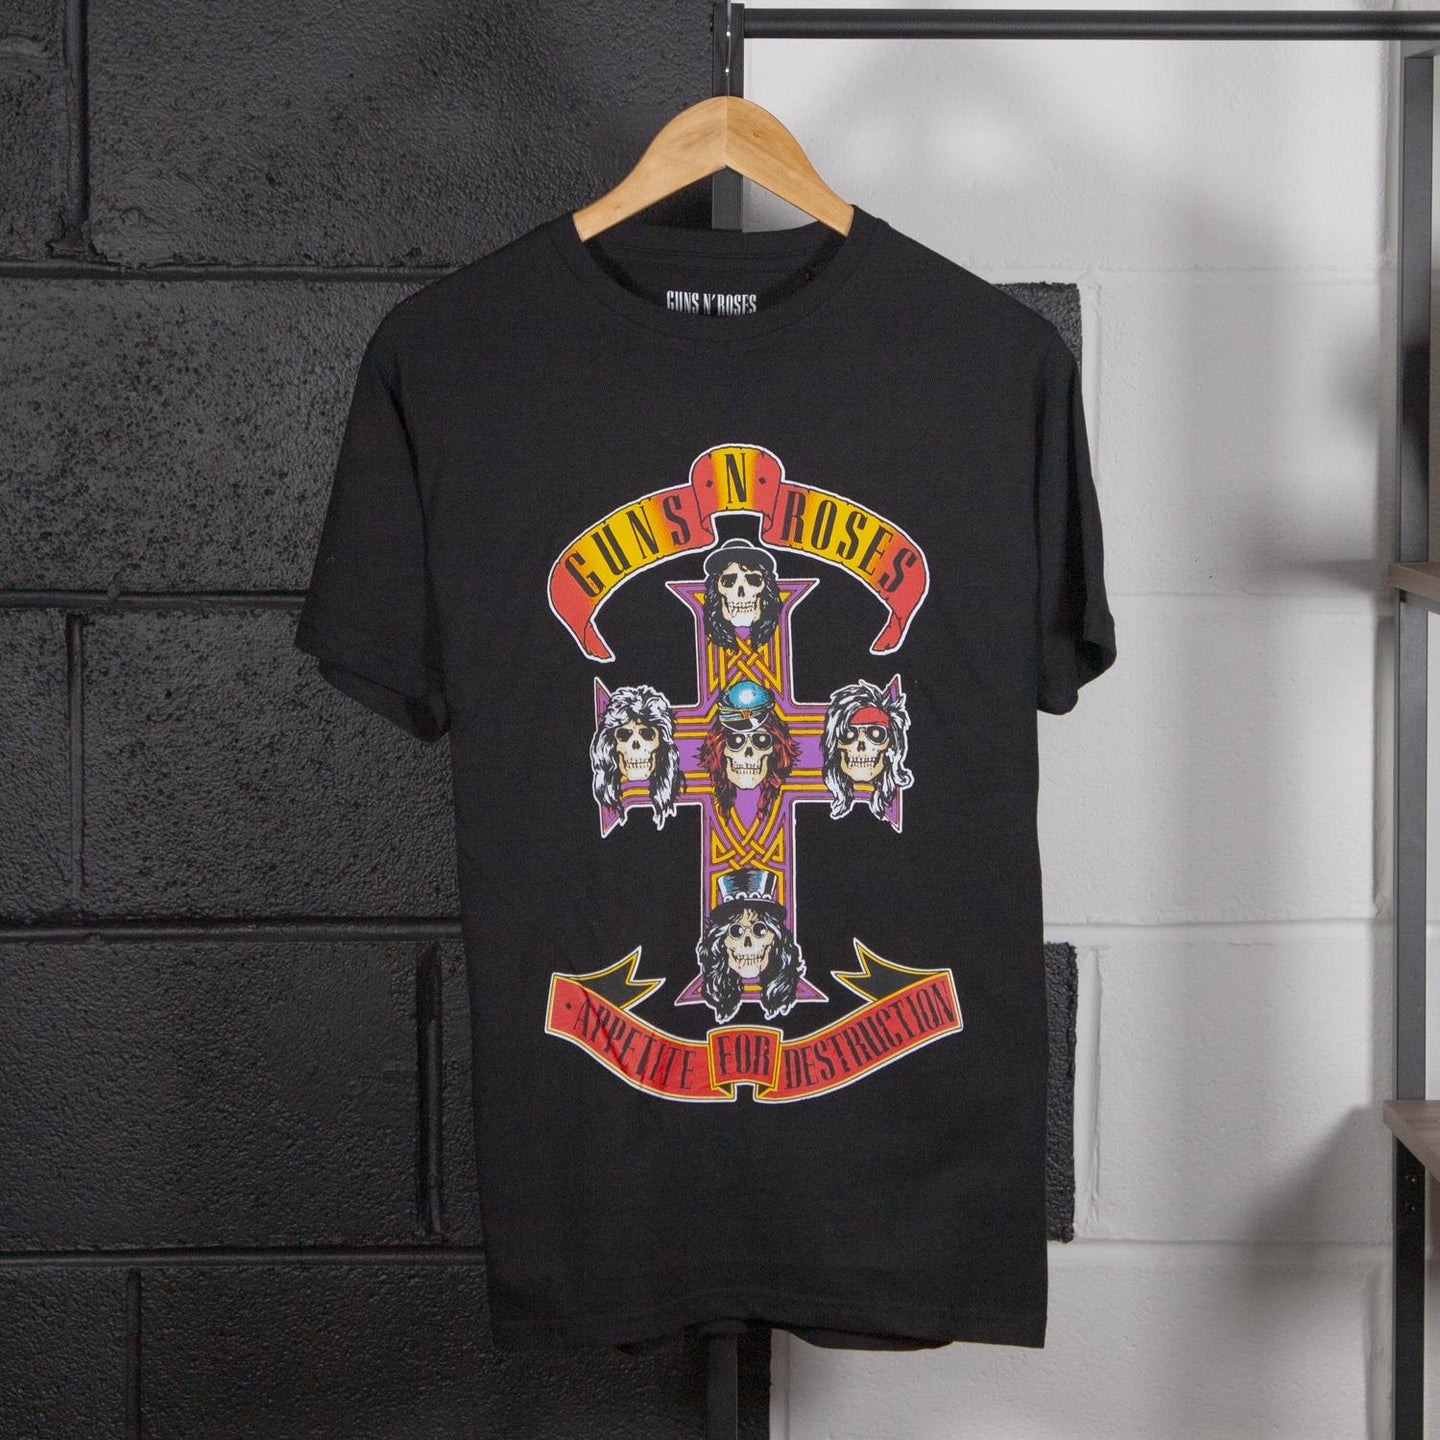 Guns N' Roses Appetite For Destruction T-Shirt